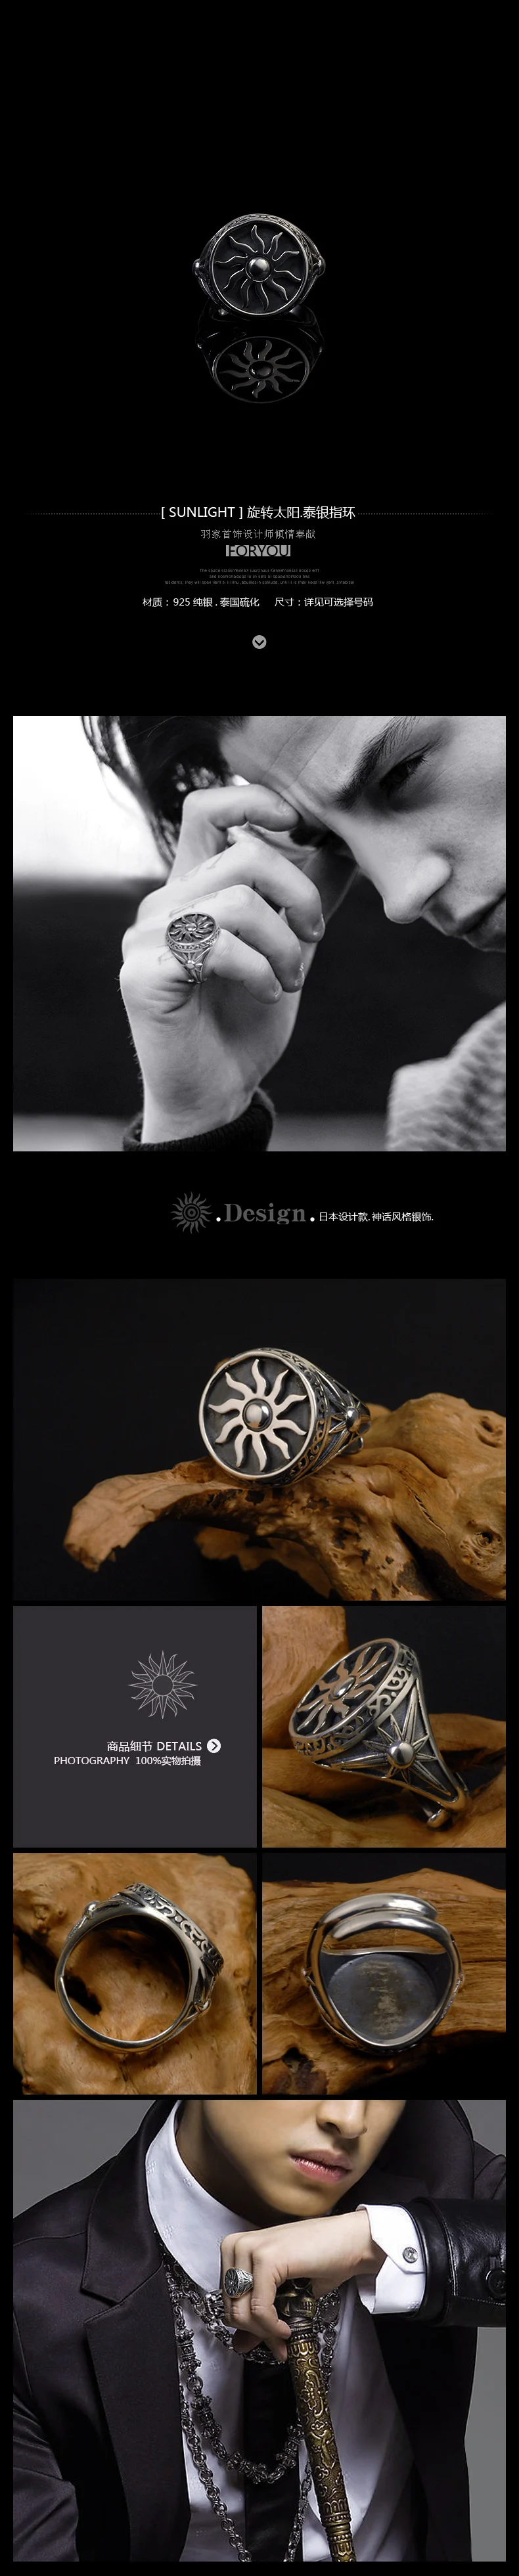 Мужские кольца, серебро 925 пробы, властное кольцо в стиле ретро, вращающееся солнечное кольцо для мужчин и женщин, индивидуальные серебряные аксессуары